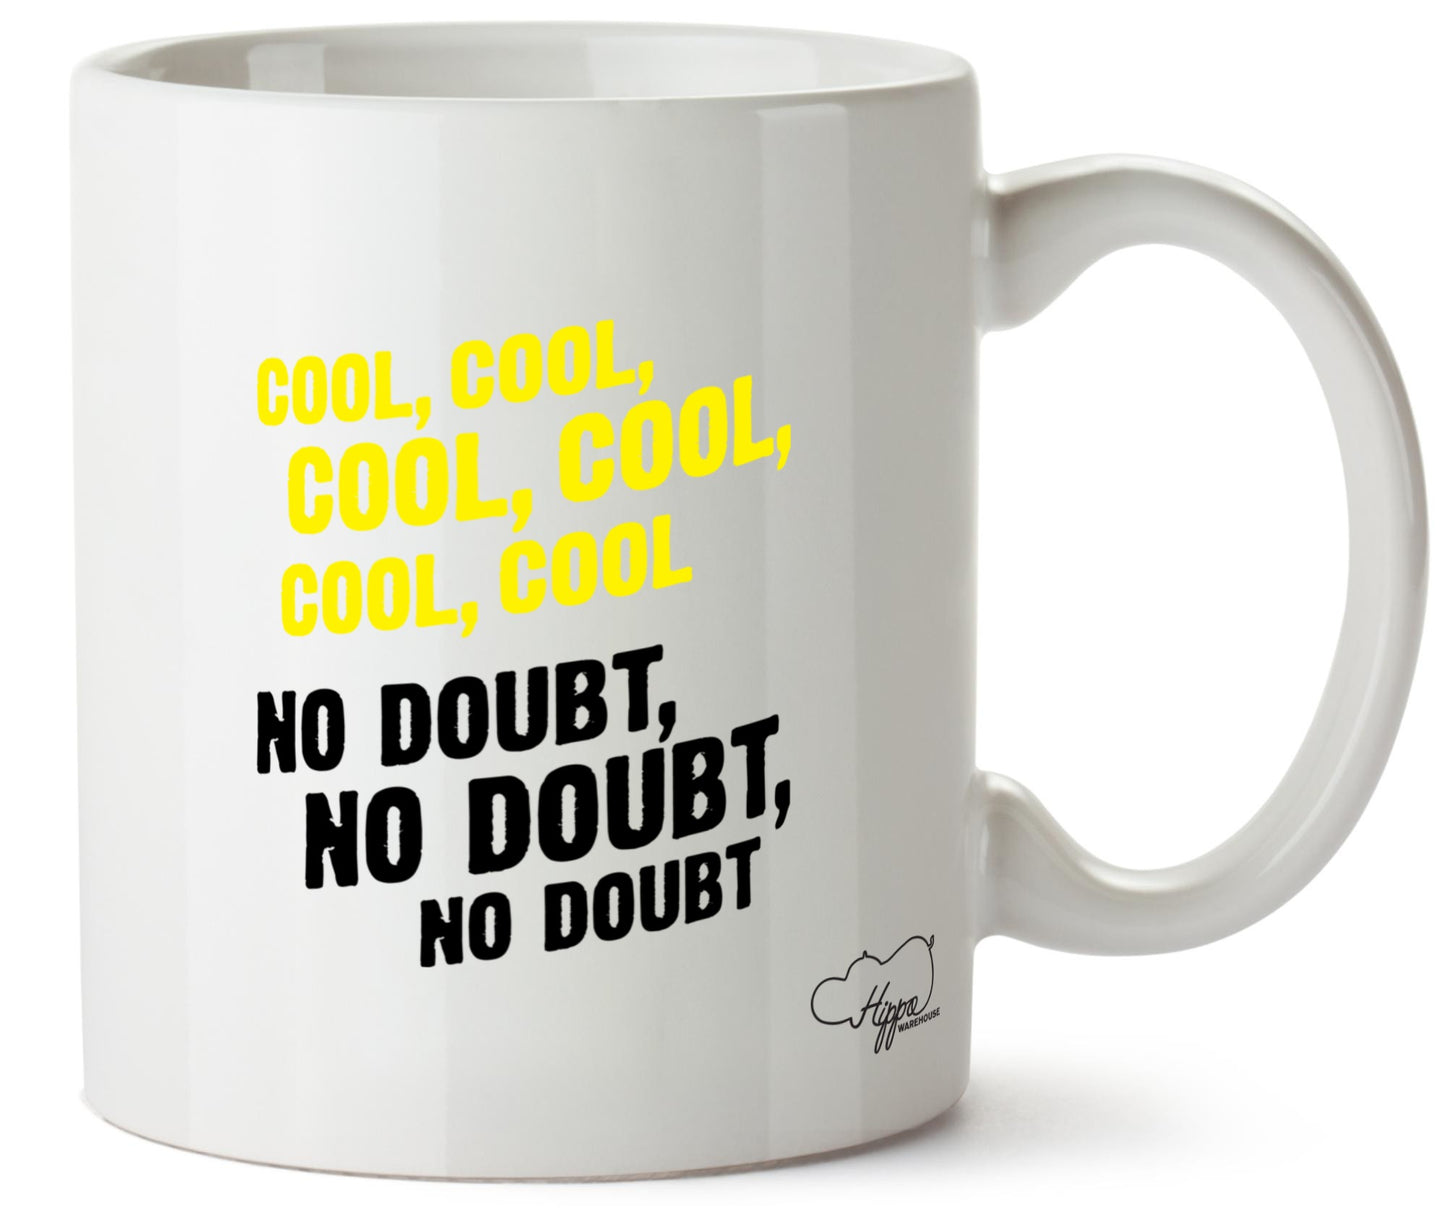 Cool, cool, cool, cool, cool. No doubt, no doubt, no doubt. 10oz Mug